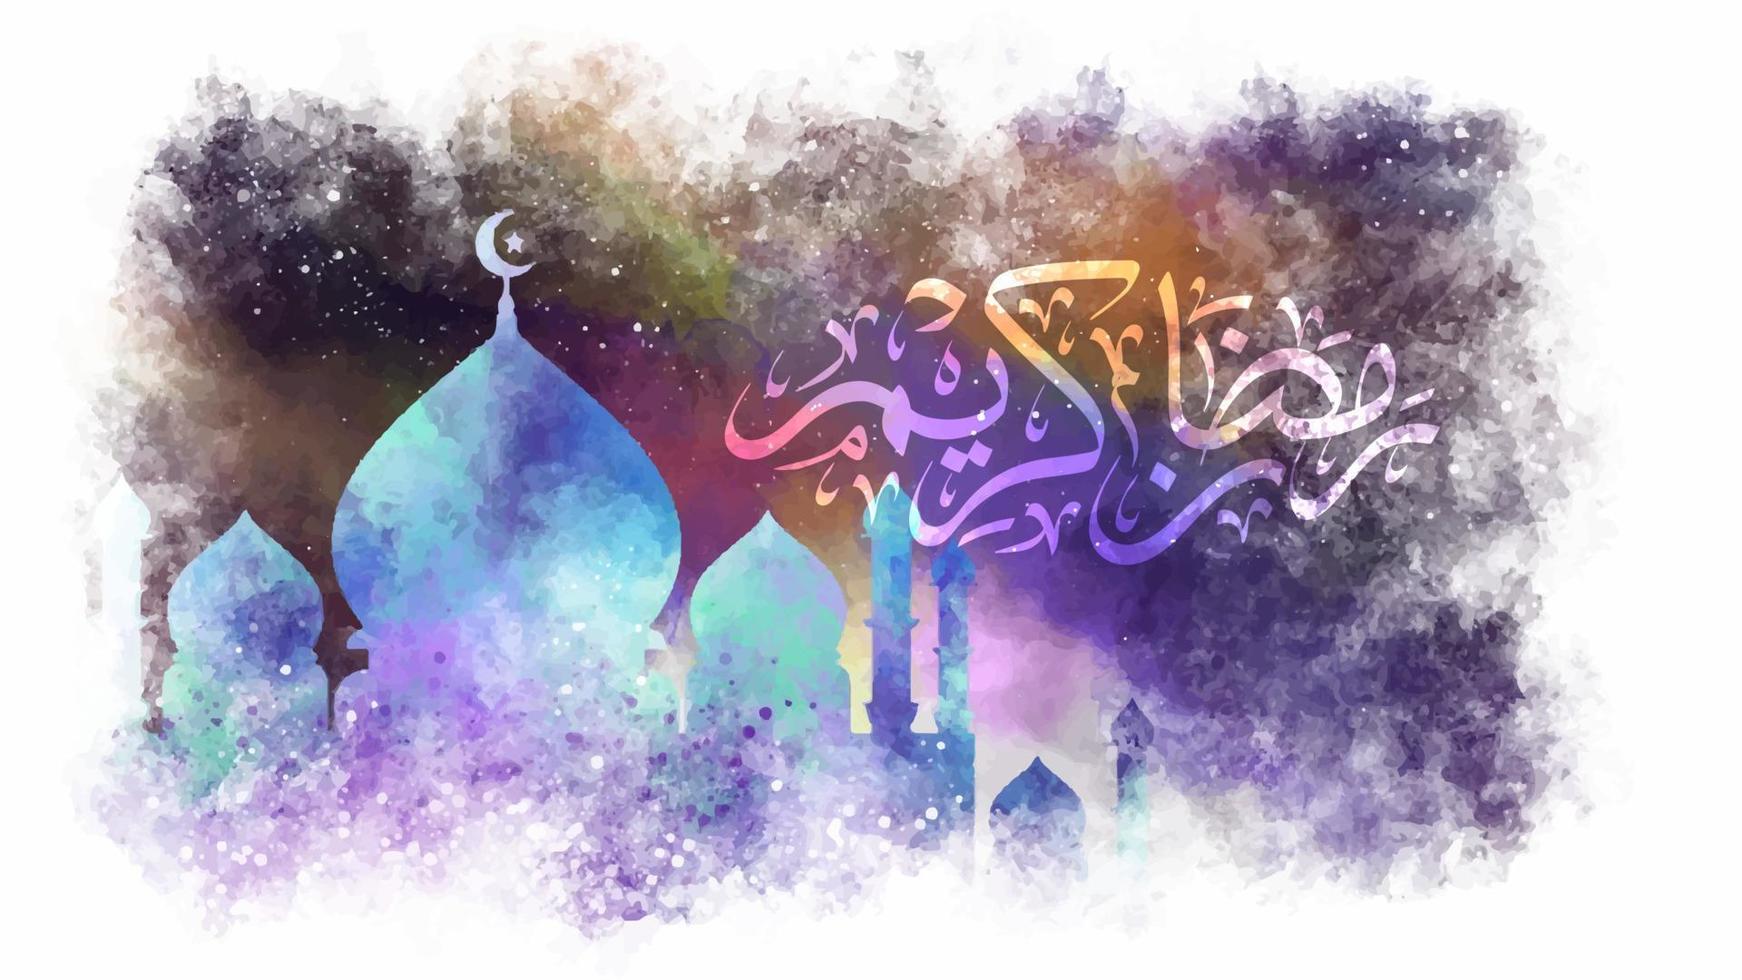 abstract waterverf moskee met Ramadan van kareem tekst in Arabisch kalligrafie. mooi hand getekend Islamitisch viering achtergrond vector